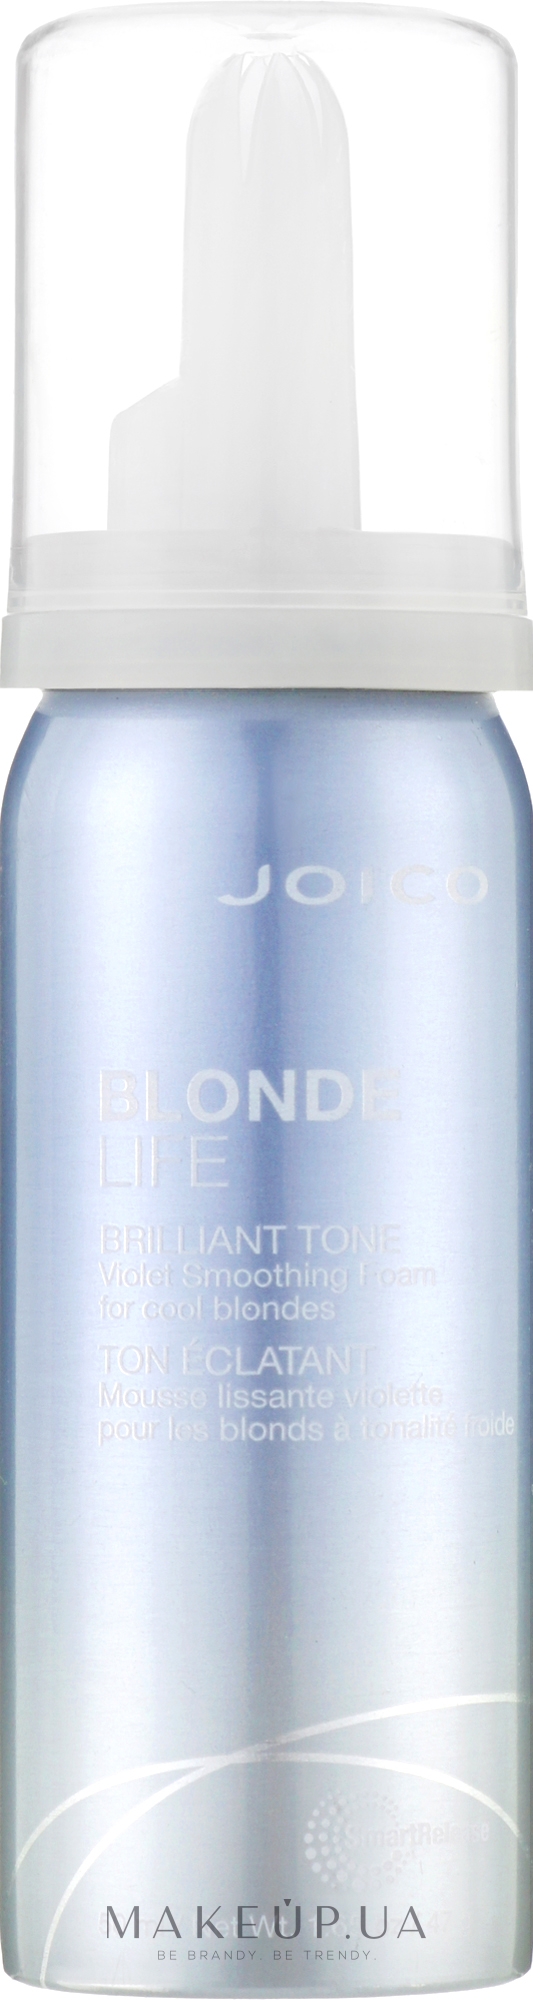 Фіолетовий розгладжувальний мус для збереження яскравості блонда - Joico Blonde Life Brilliant Tone Violet Foam Smoothing Foam — фото 50ml